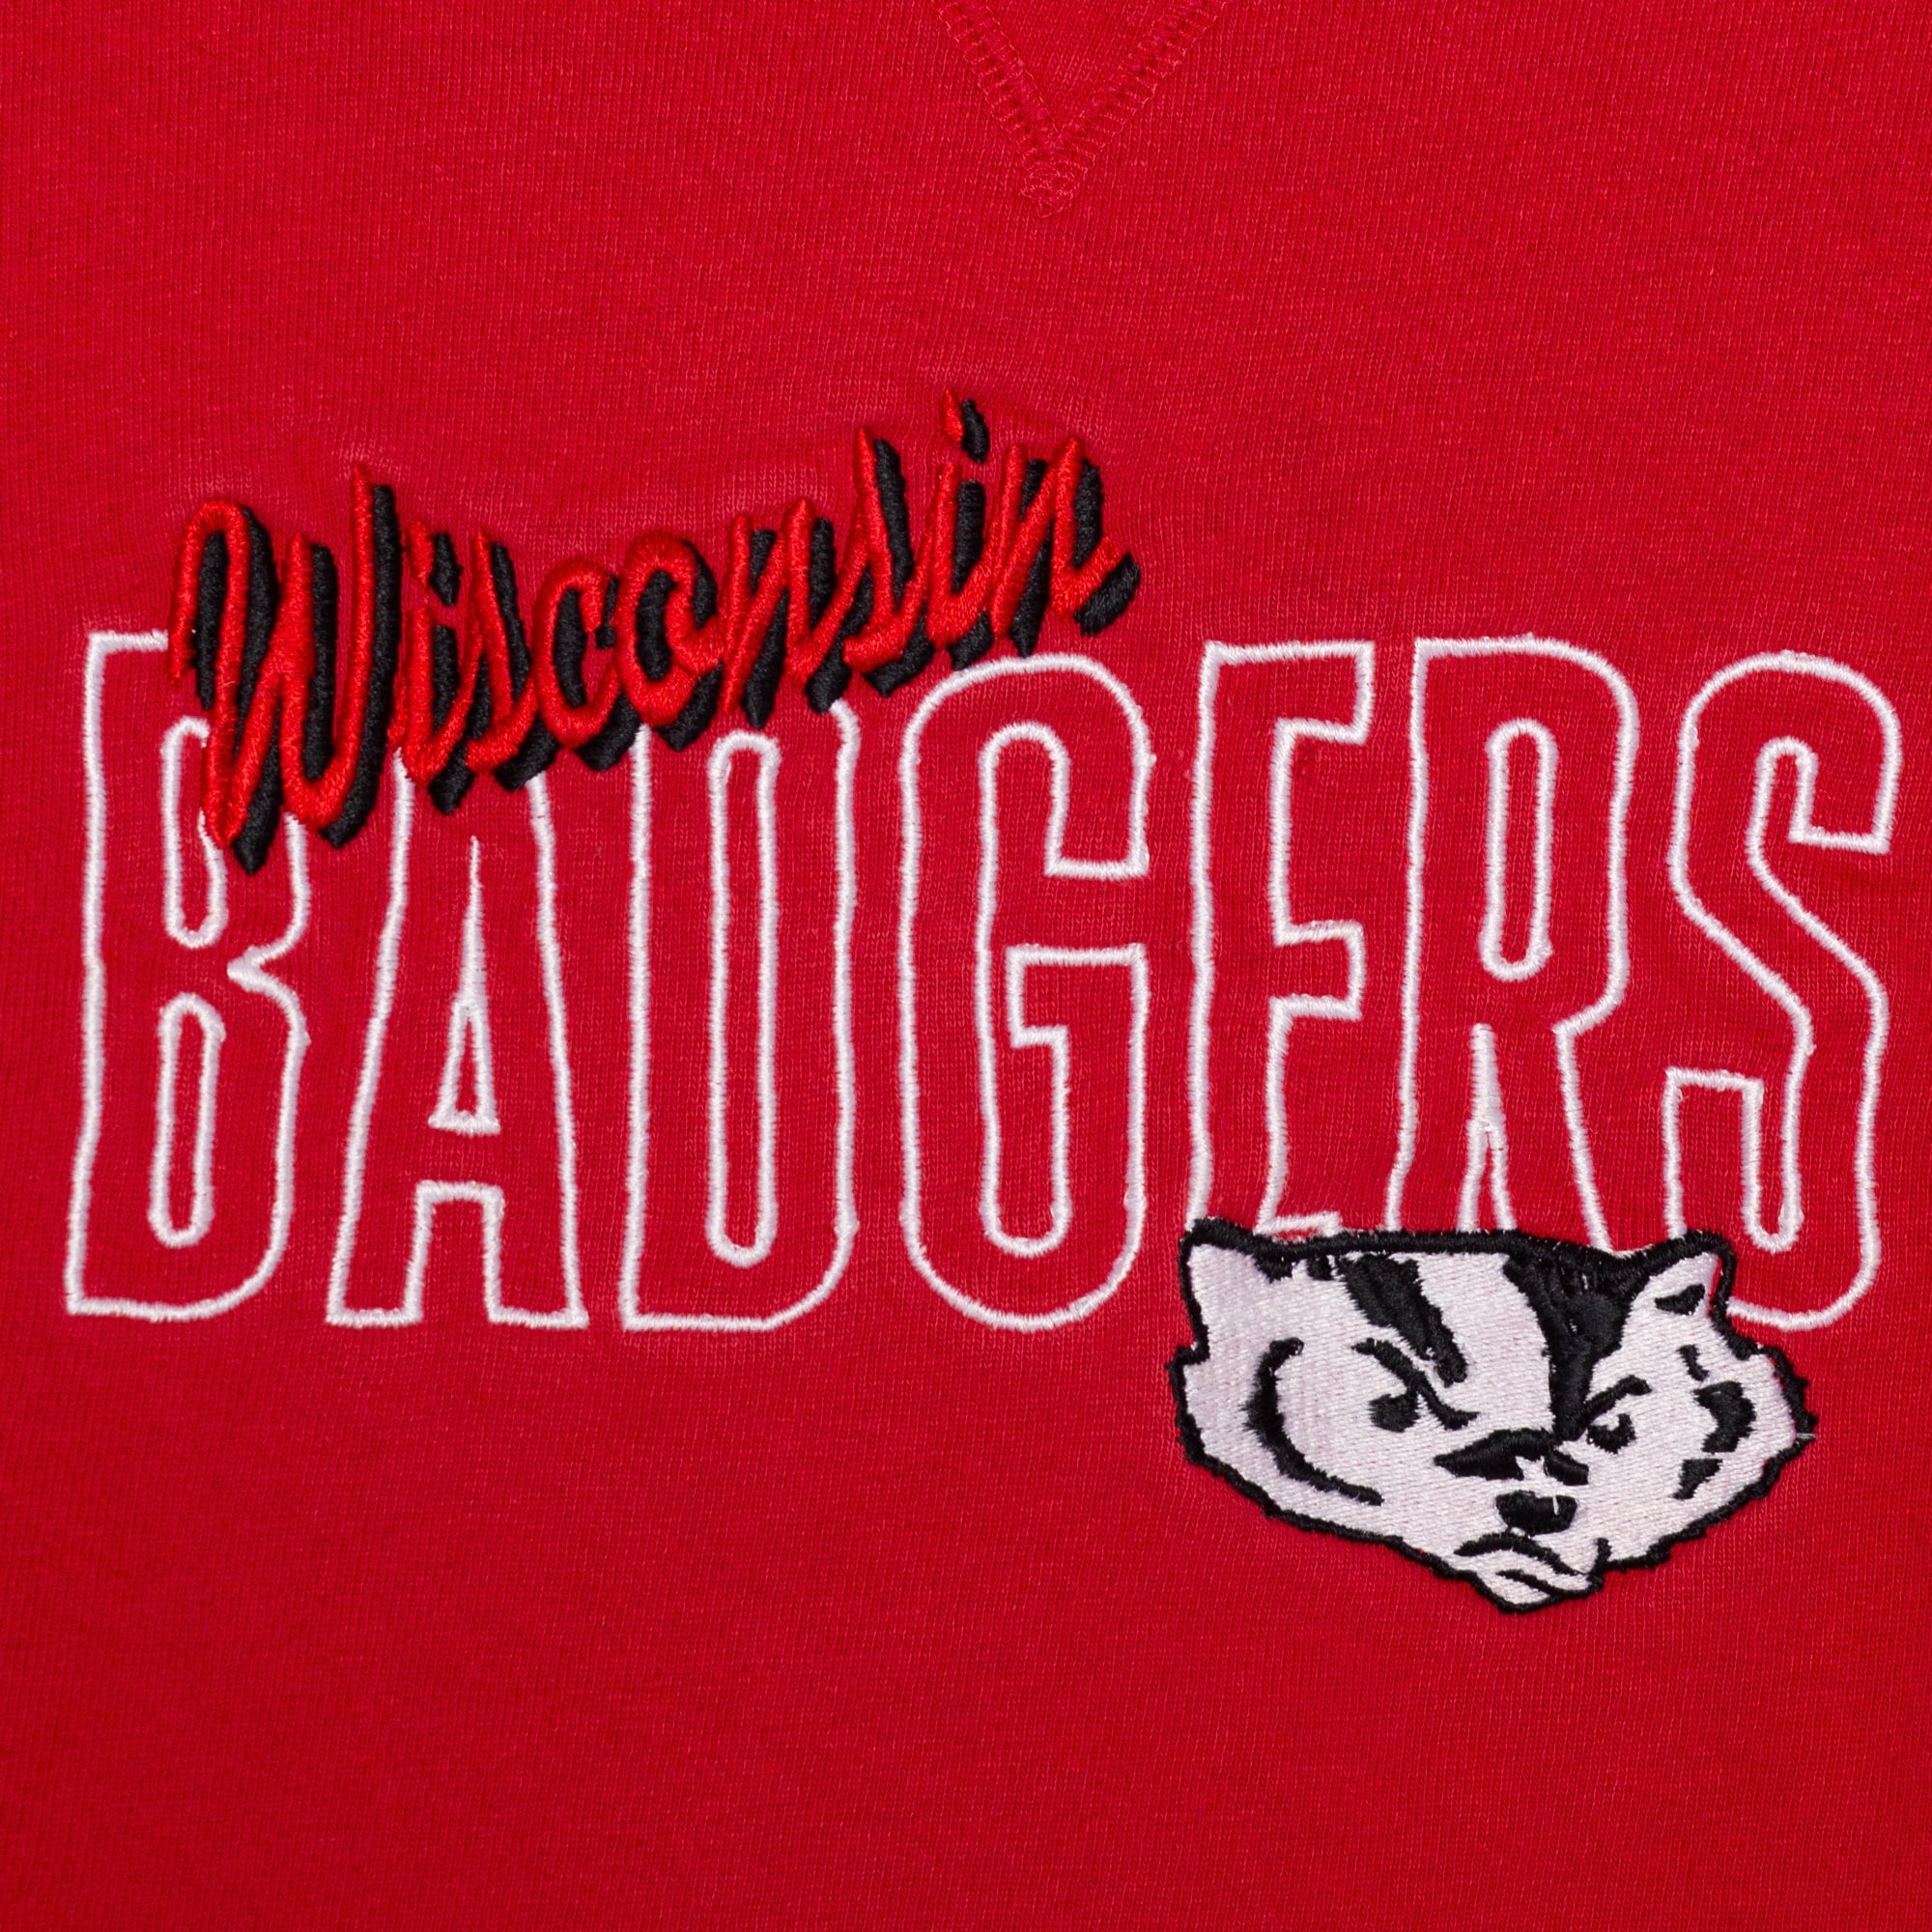 90s Wisconsin Badgers Champion Sweatshirt - Men's Large